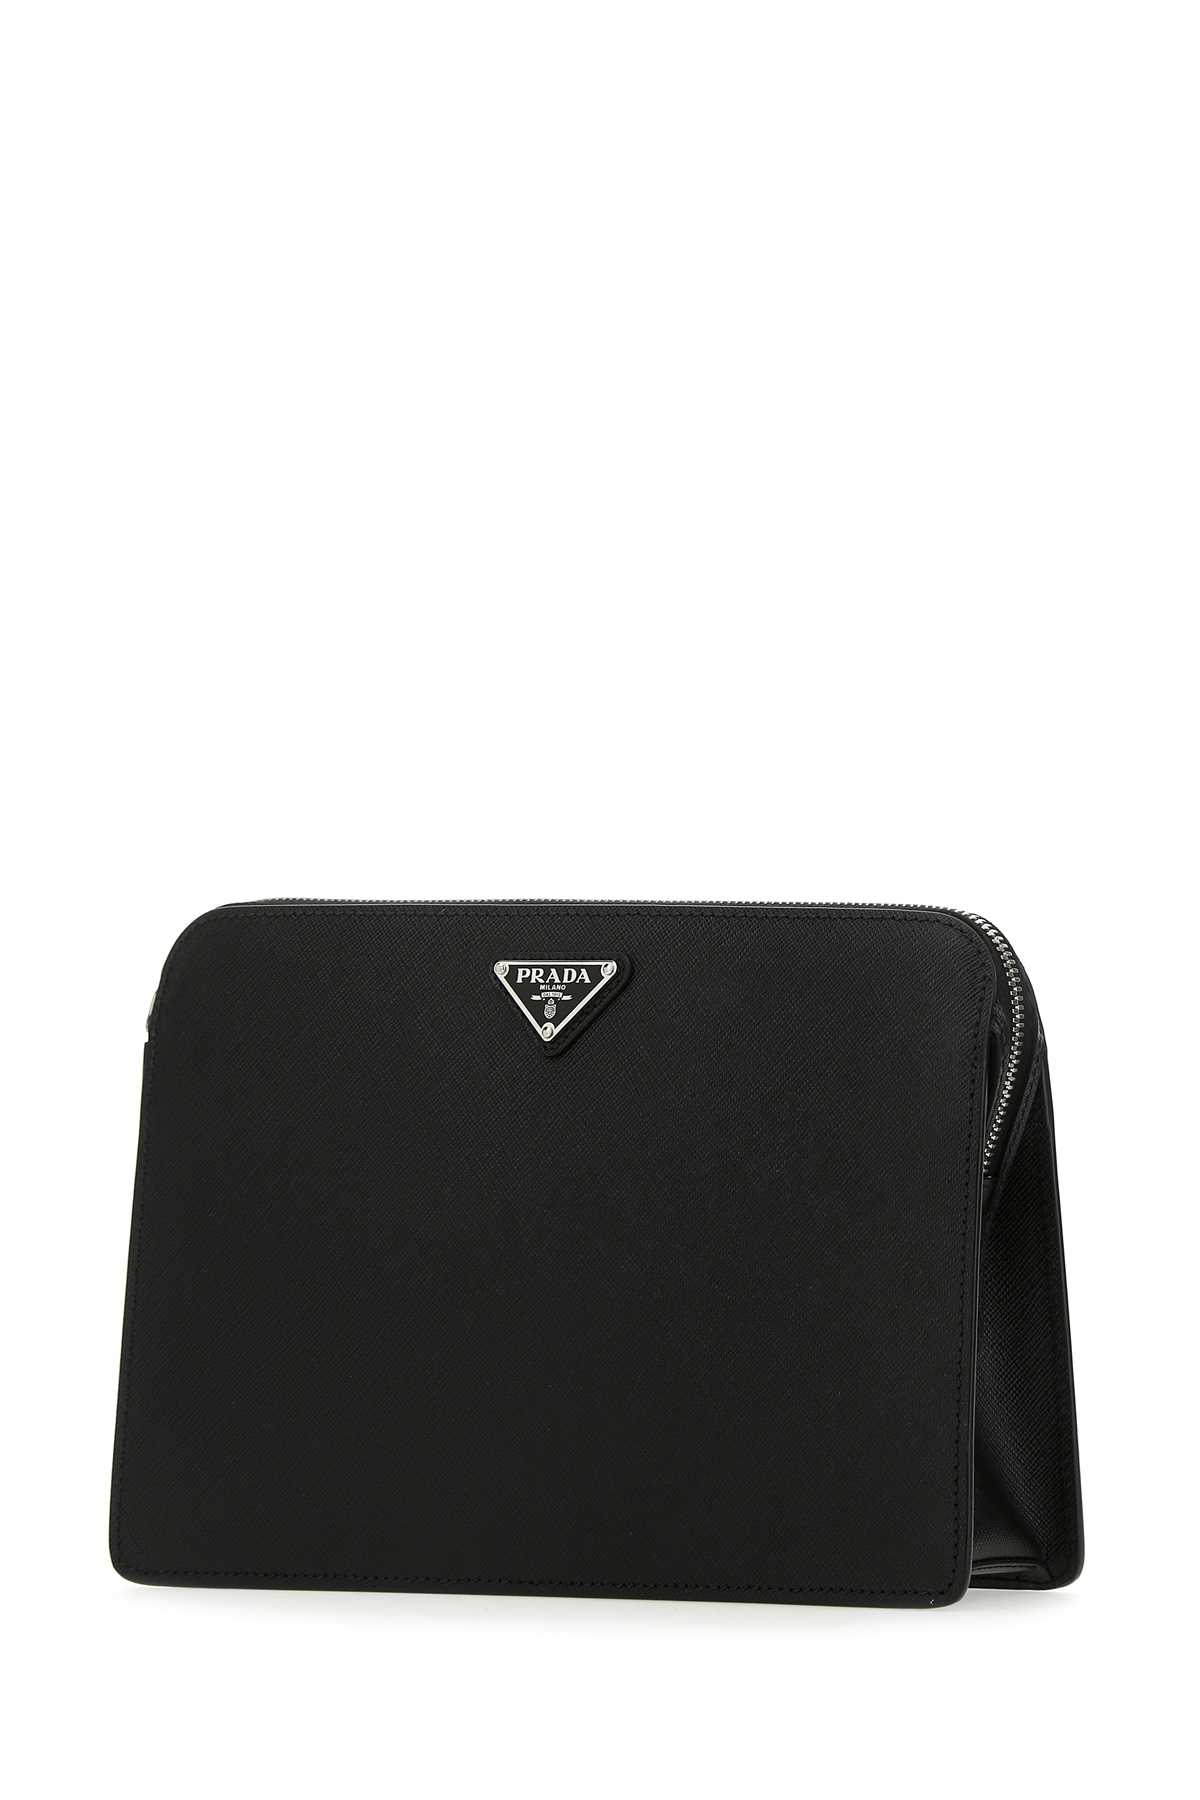 Prada Black Leather Clutch In F0002